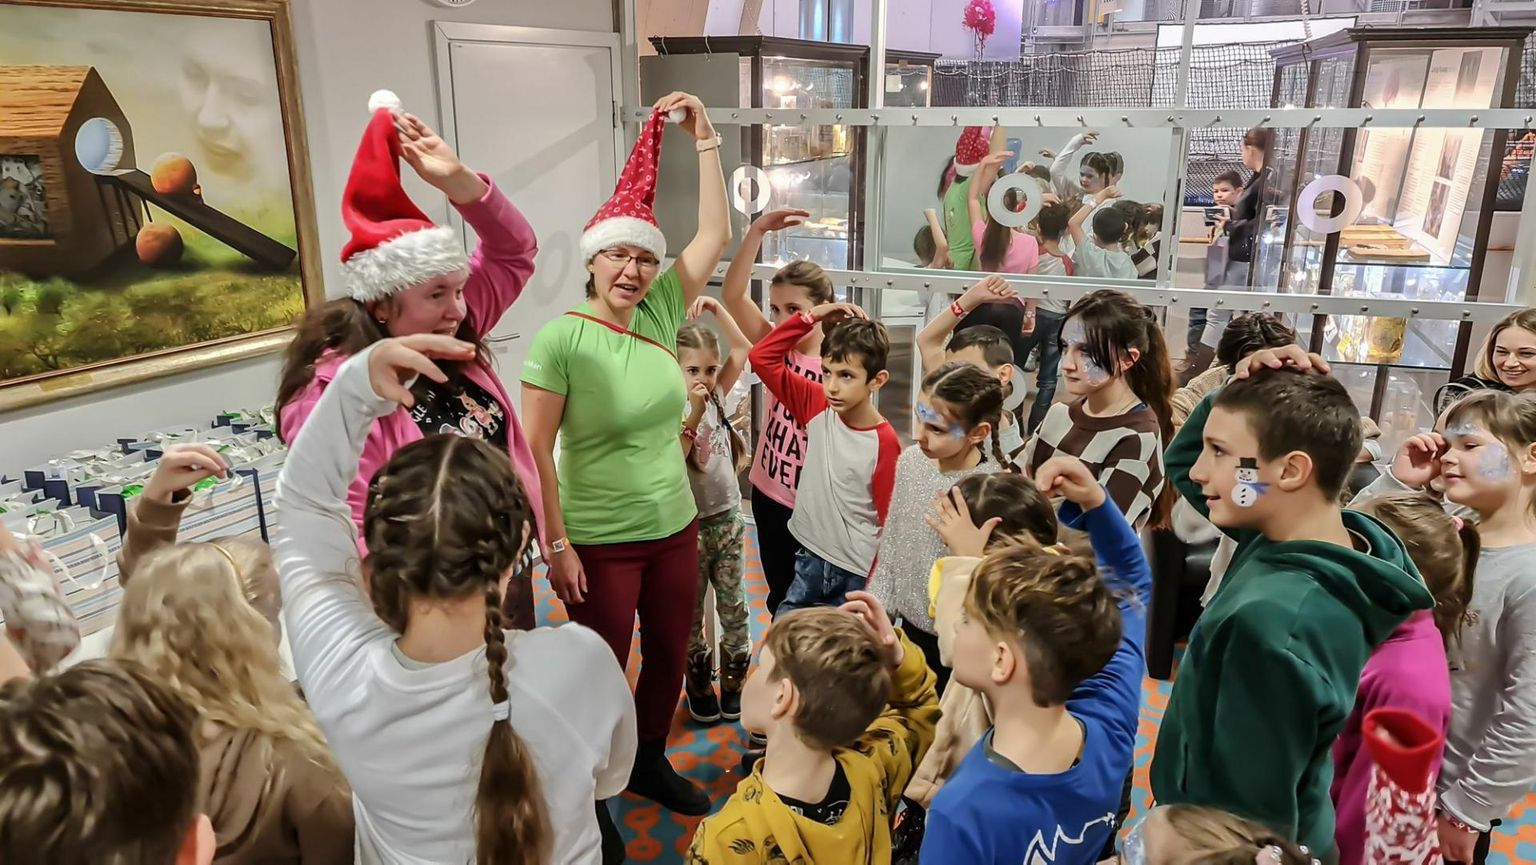 Paide linna piirkondades elavad Ukraina sõjapõgenike lapsed ja nende pered said Tartu Ahhaa keskuses osa lustlikust jõulupeost, mille olid korraldanud neile Eesti Lions klubid.